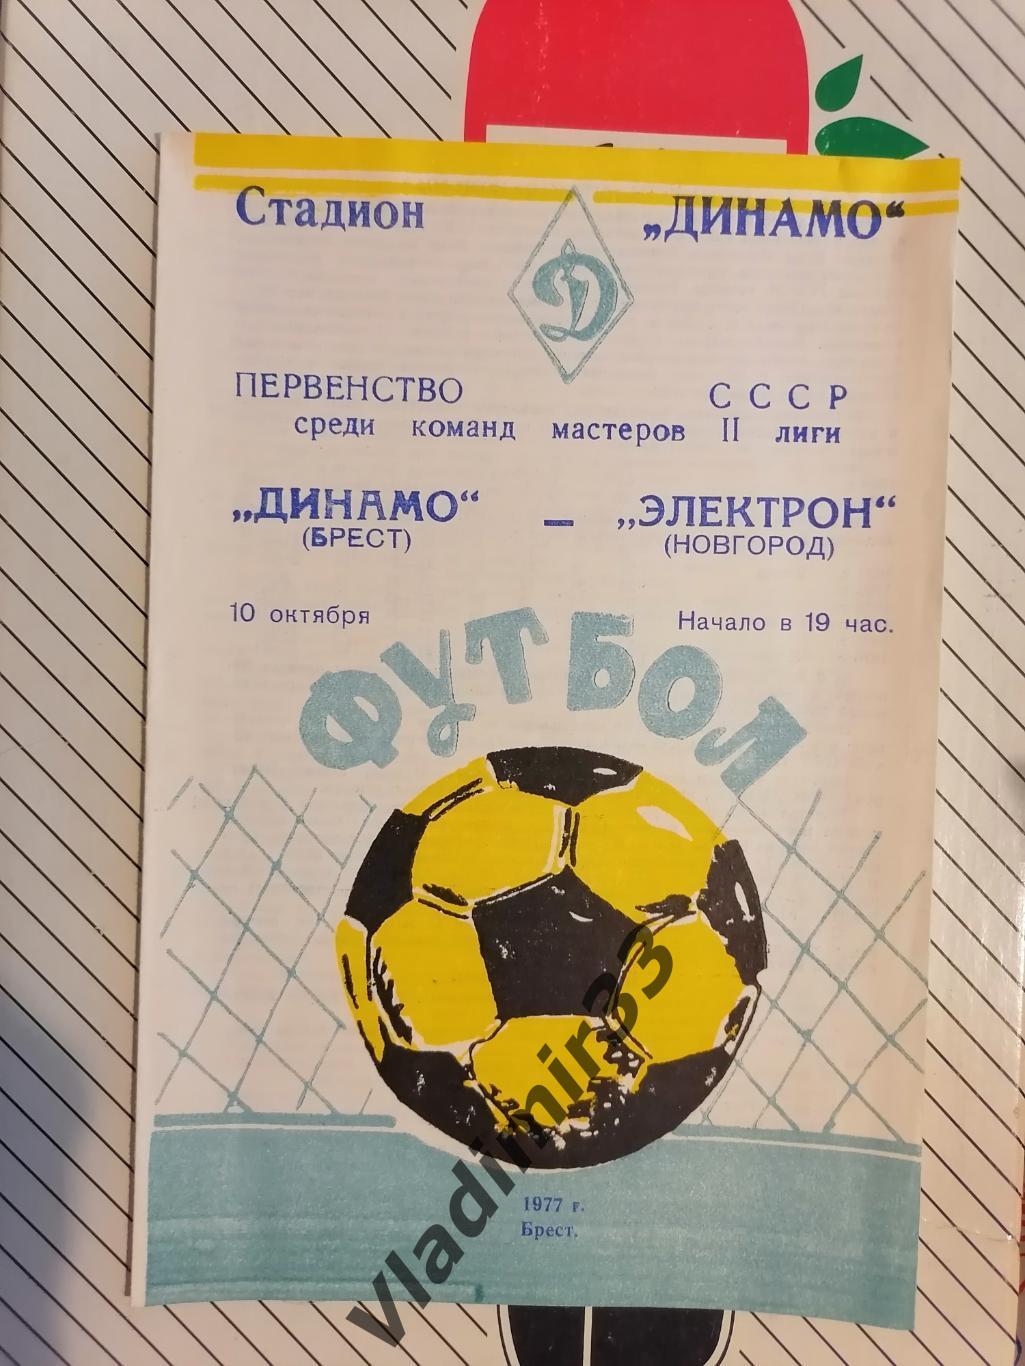 Динамо Брест-Электрон Новгород 1977